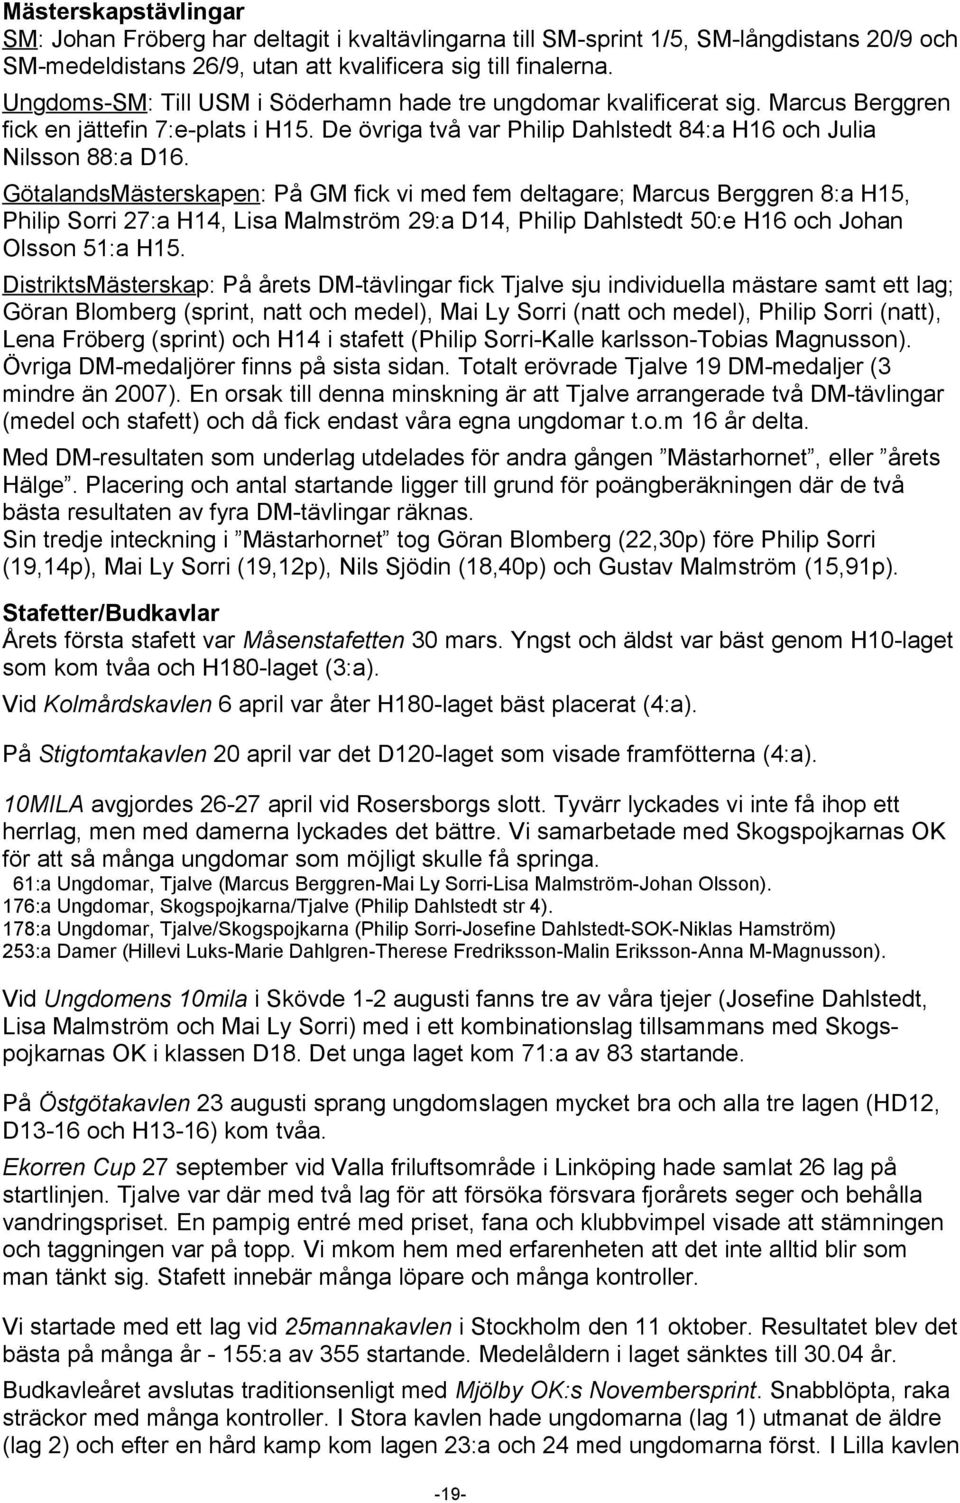 GötalandsMästerskapen: På GM fick vi med fem deltagare; Marcus Berggren 8:a H15, Philip Sorri 27:a H14, Lisa Malmström 29:a D14, Philip Dahlstedt 50:e H16 och Johan Olsson 51:a H15.